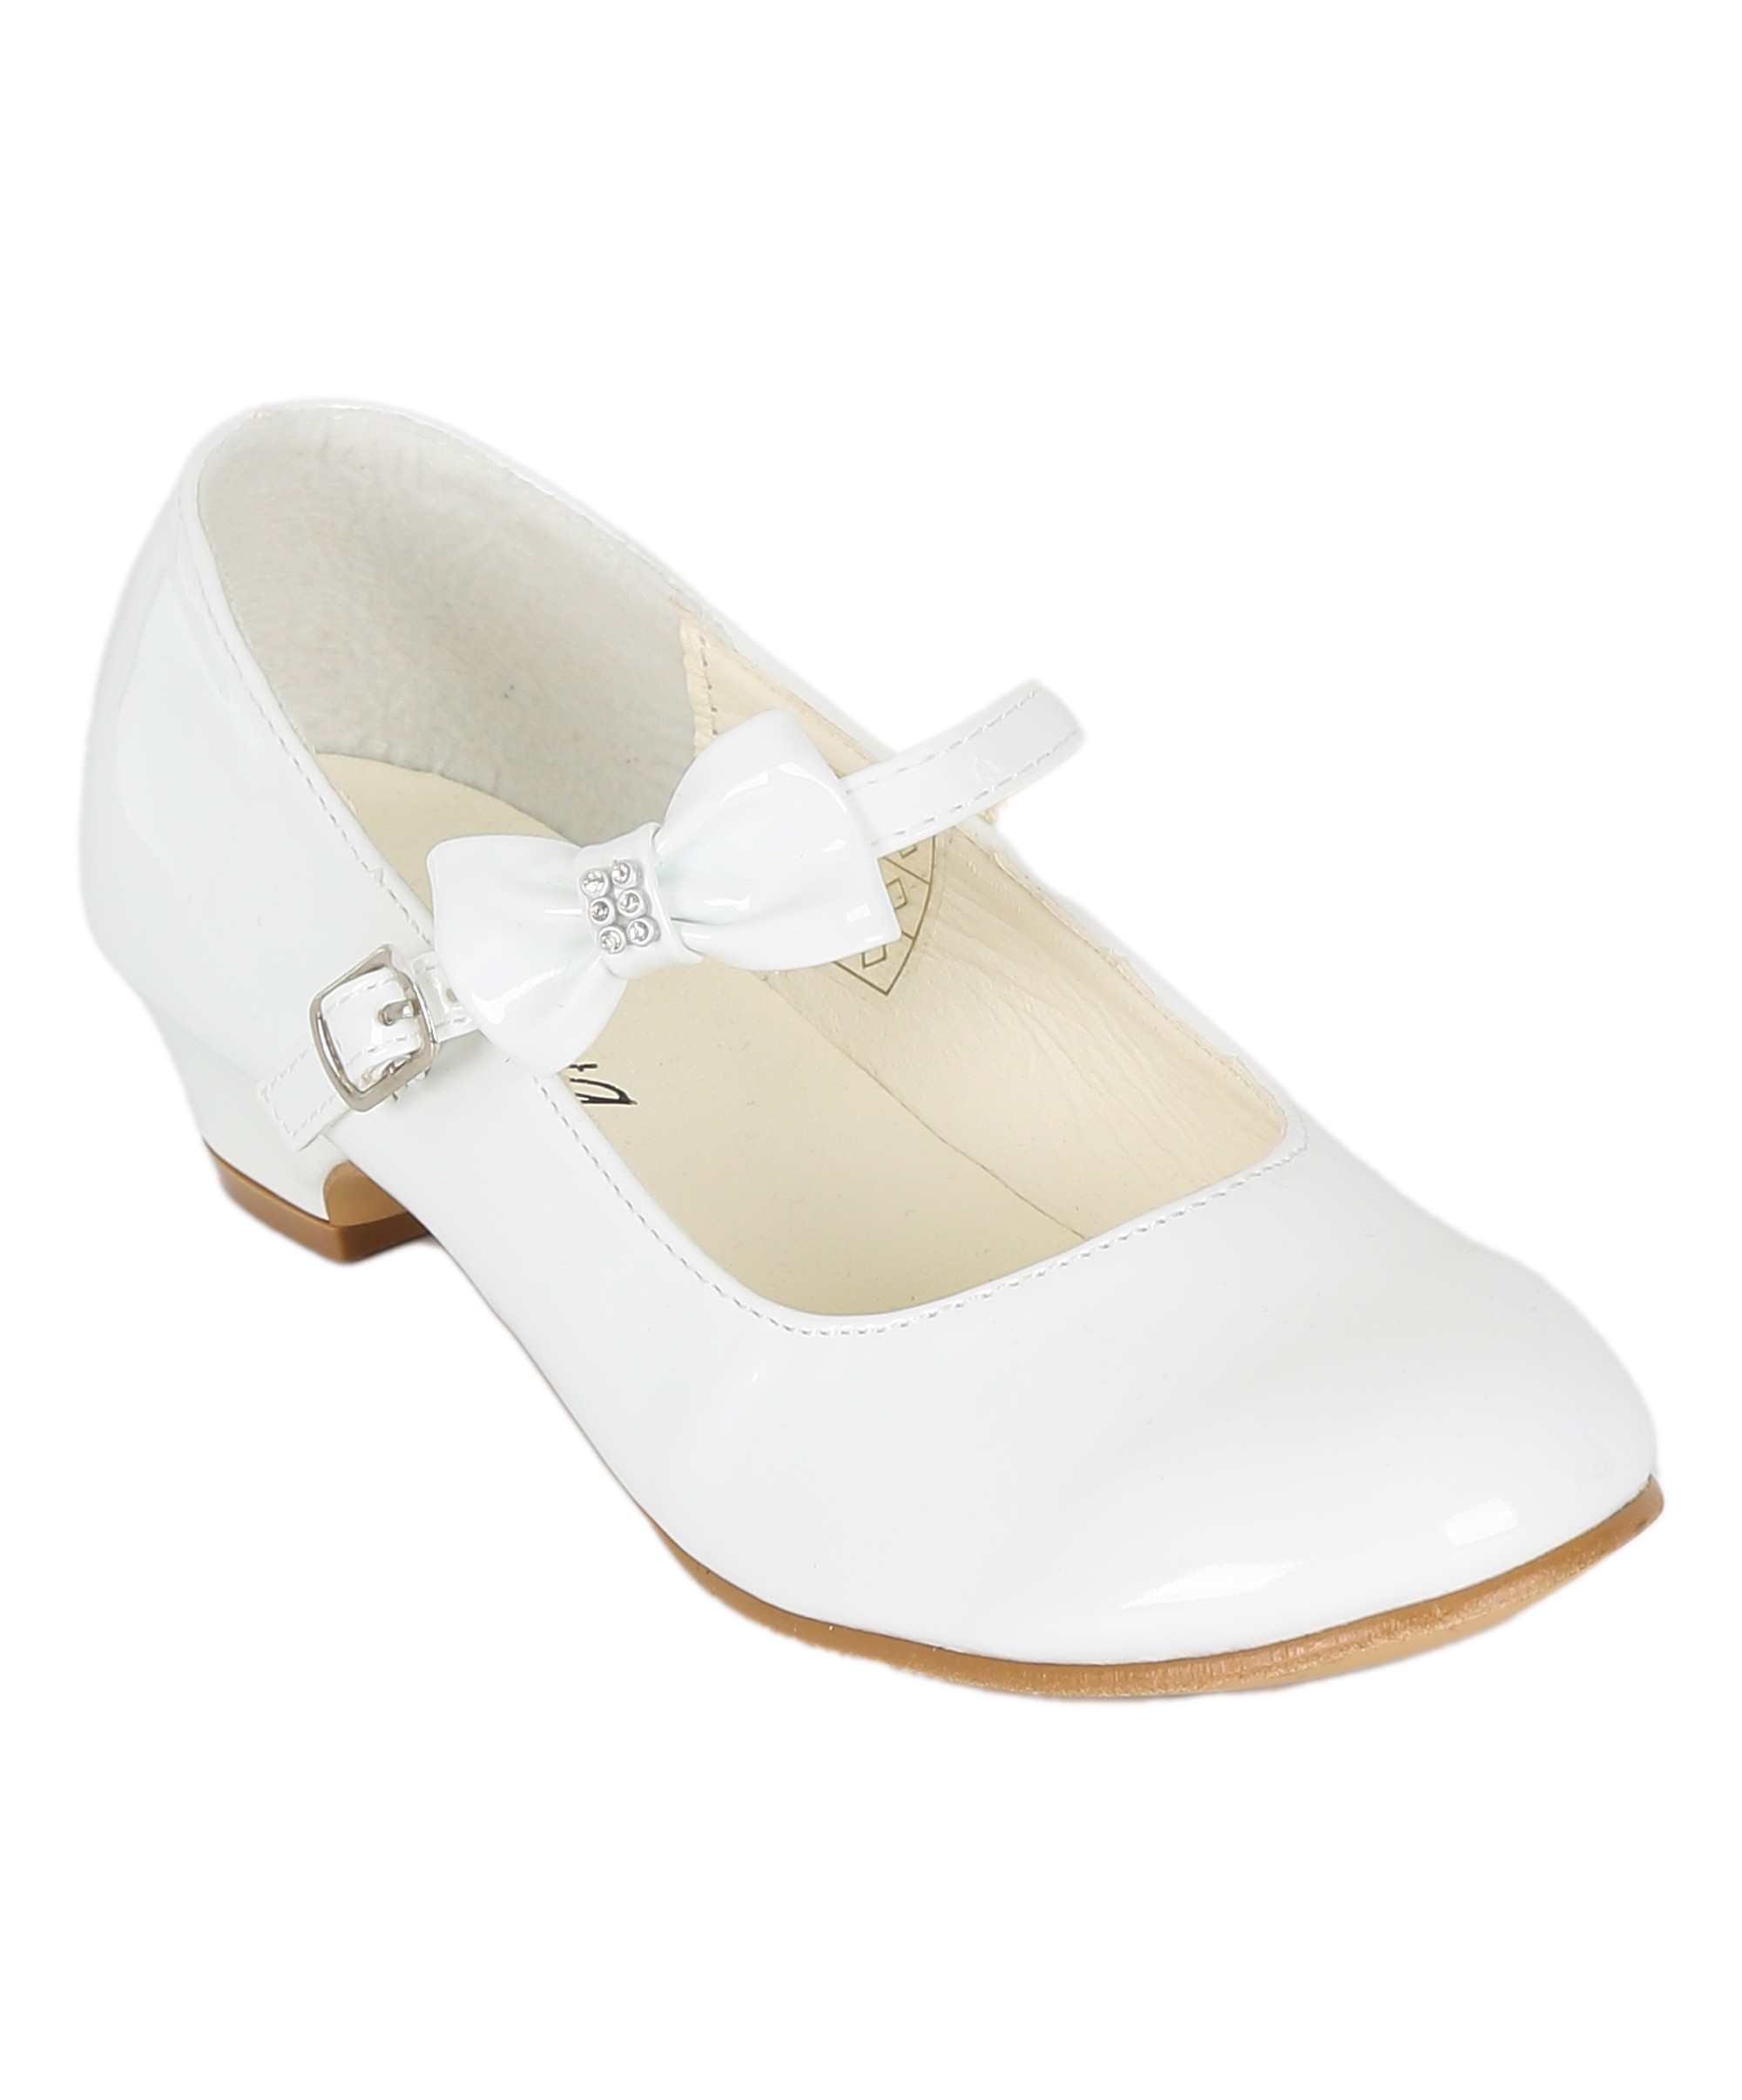 Girls Medium Heel Patent Mary Jane Shoes -DANIELLE - White